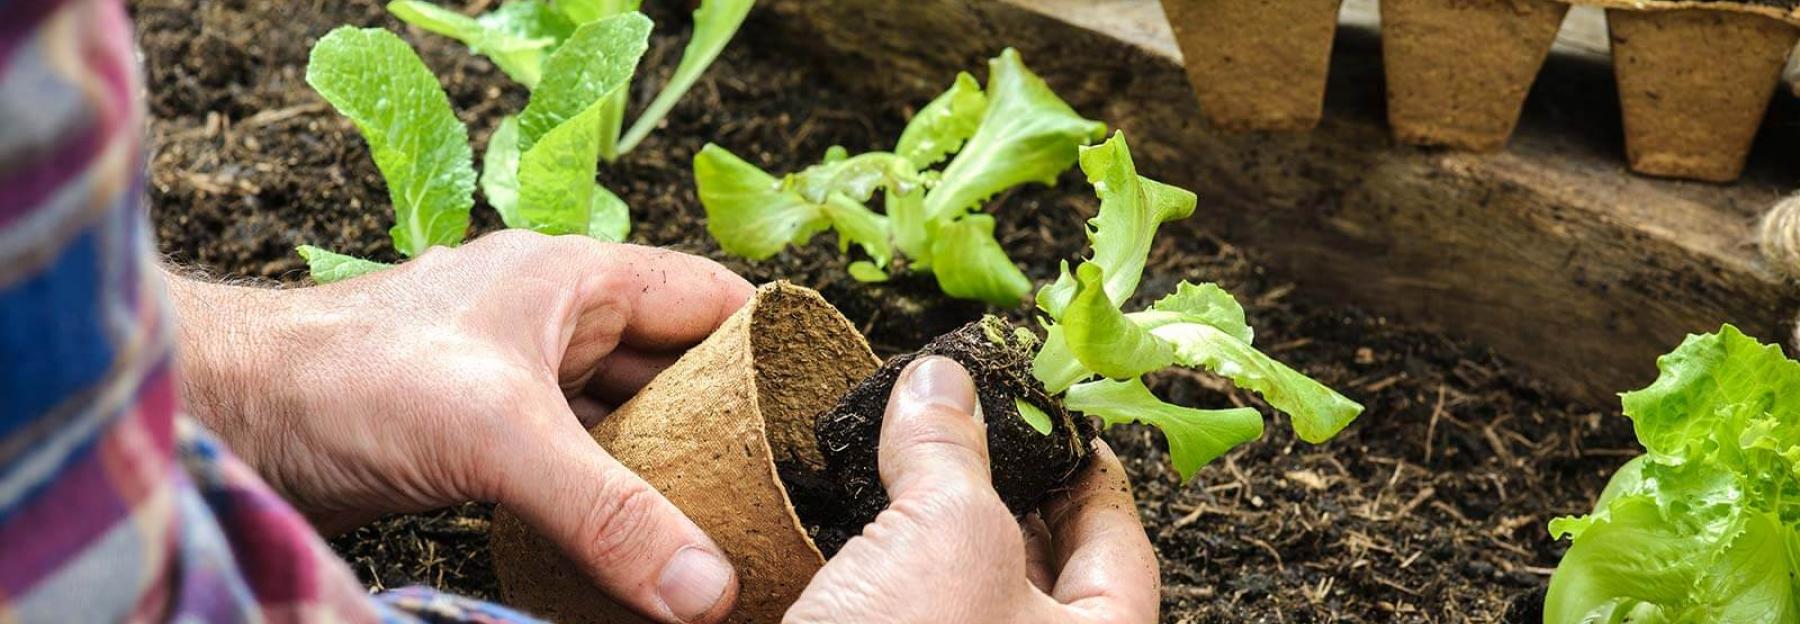 Gemüse vorziehen: In 11 Schritten zum knackigen Gemüse | Blühendes